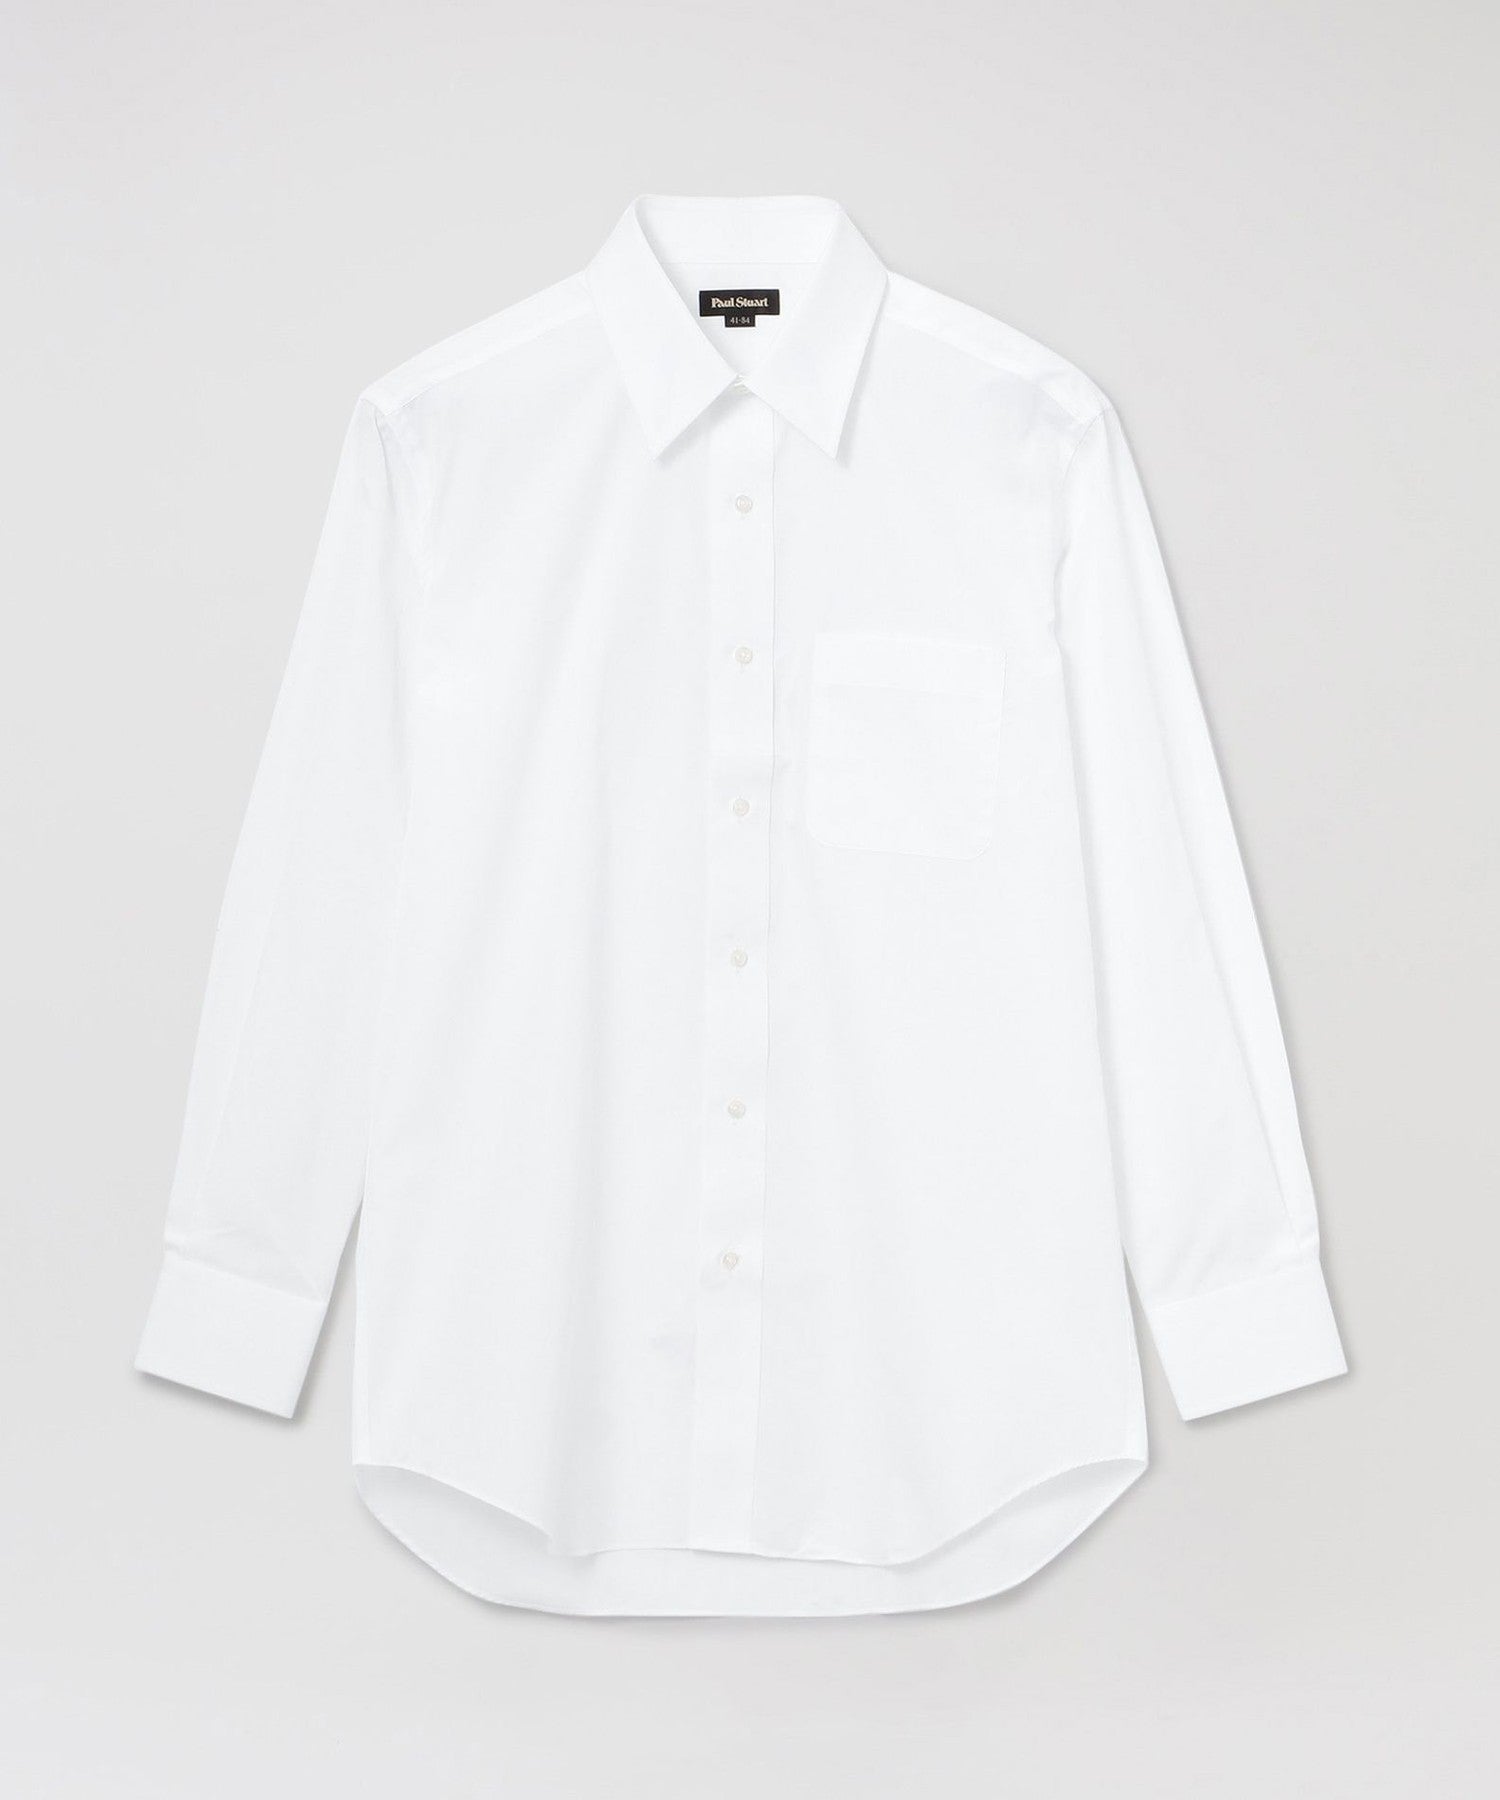 販売取寄16.5万円相当の高級ドレスシャツ8枚セットポールスミス 、LANVIN等 トップス